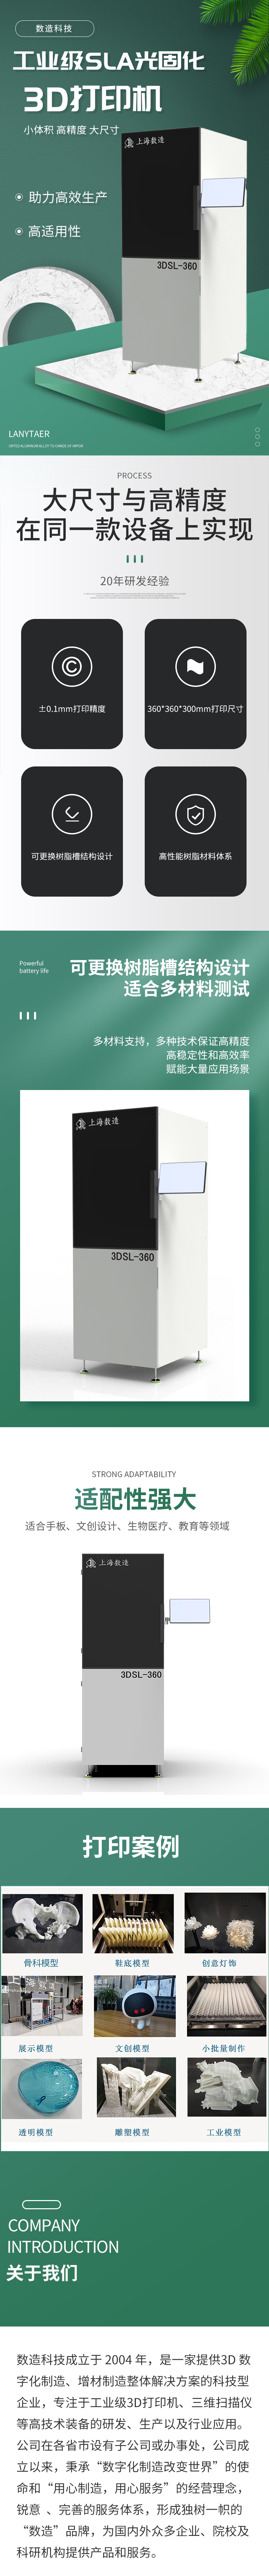 光固化3D打印机 3DSL-360